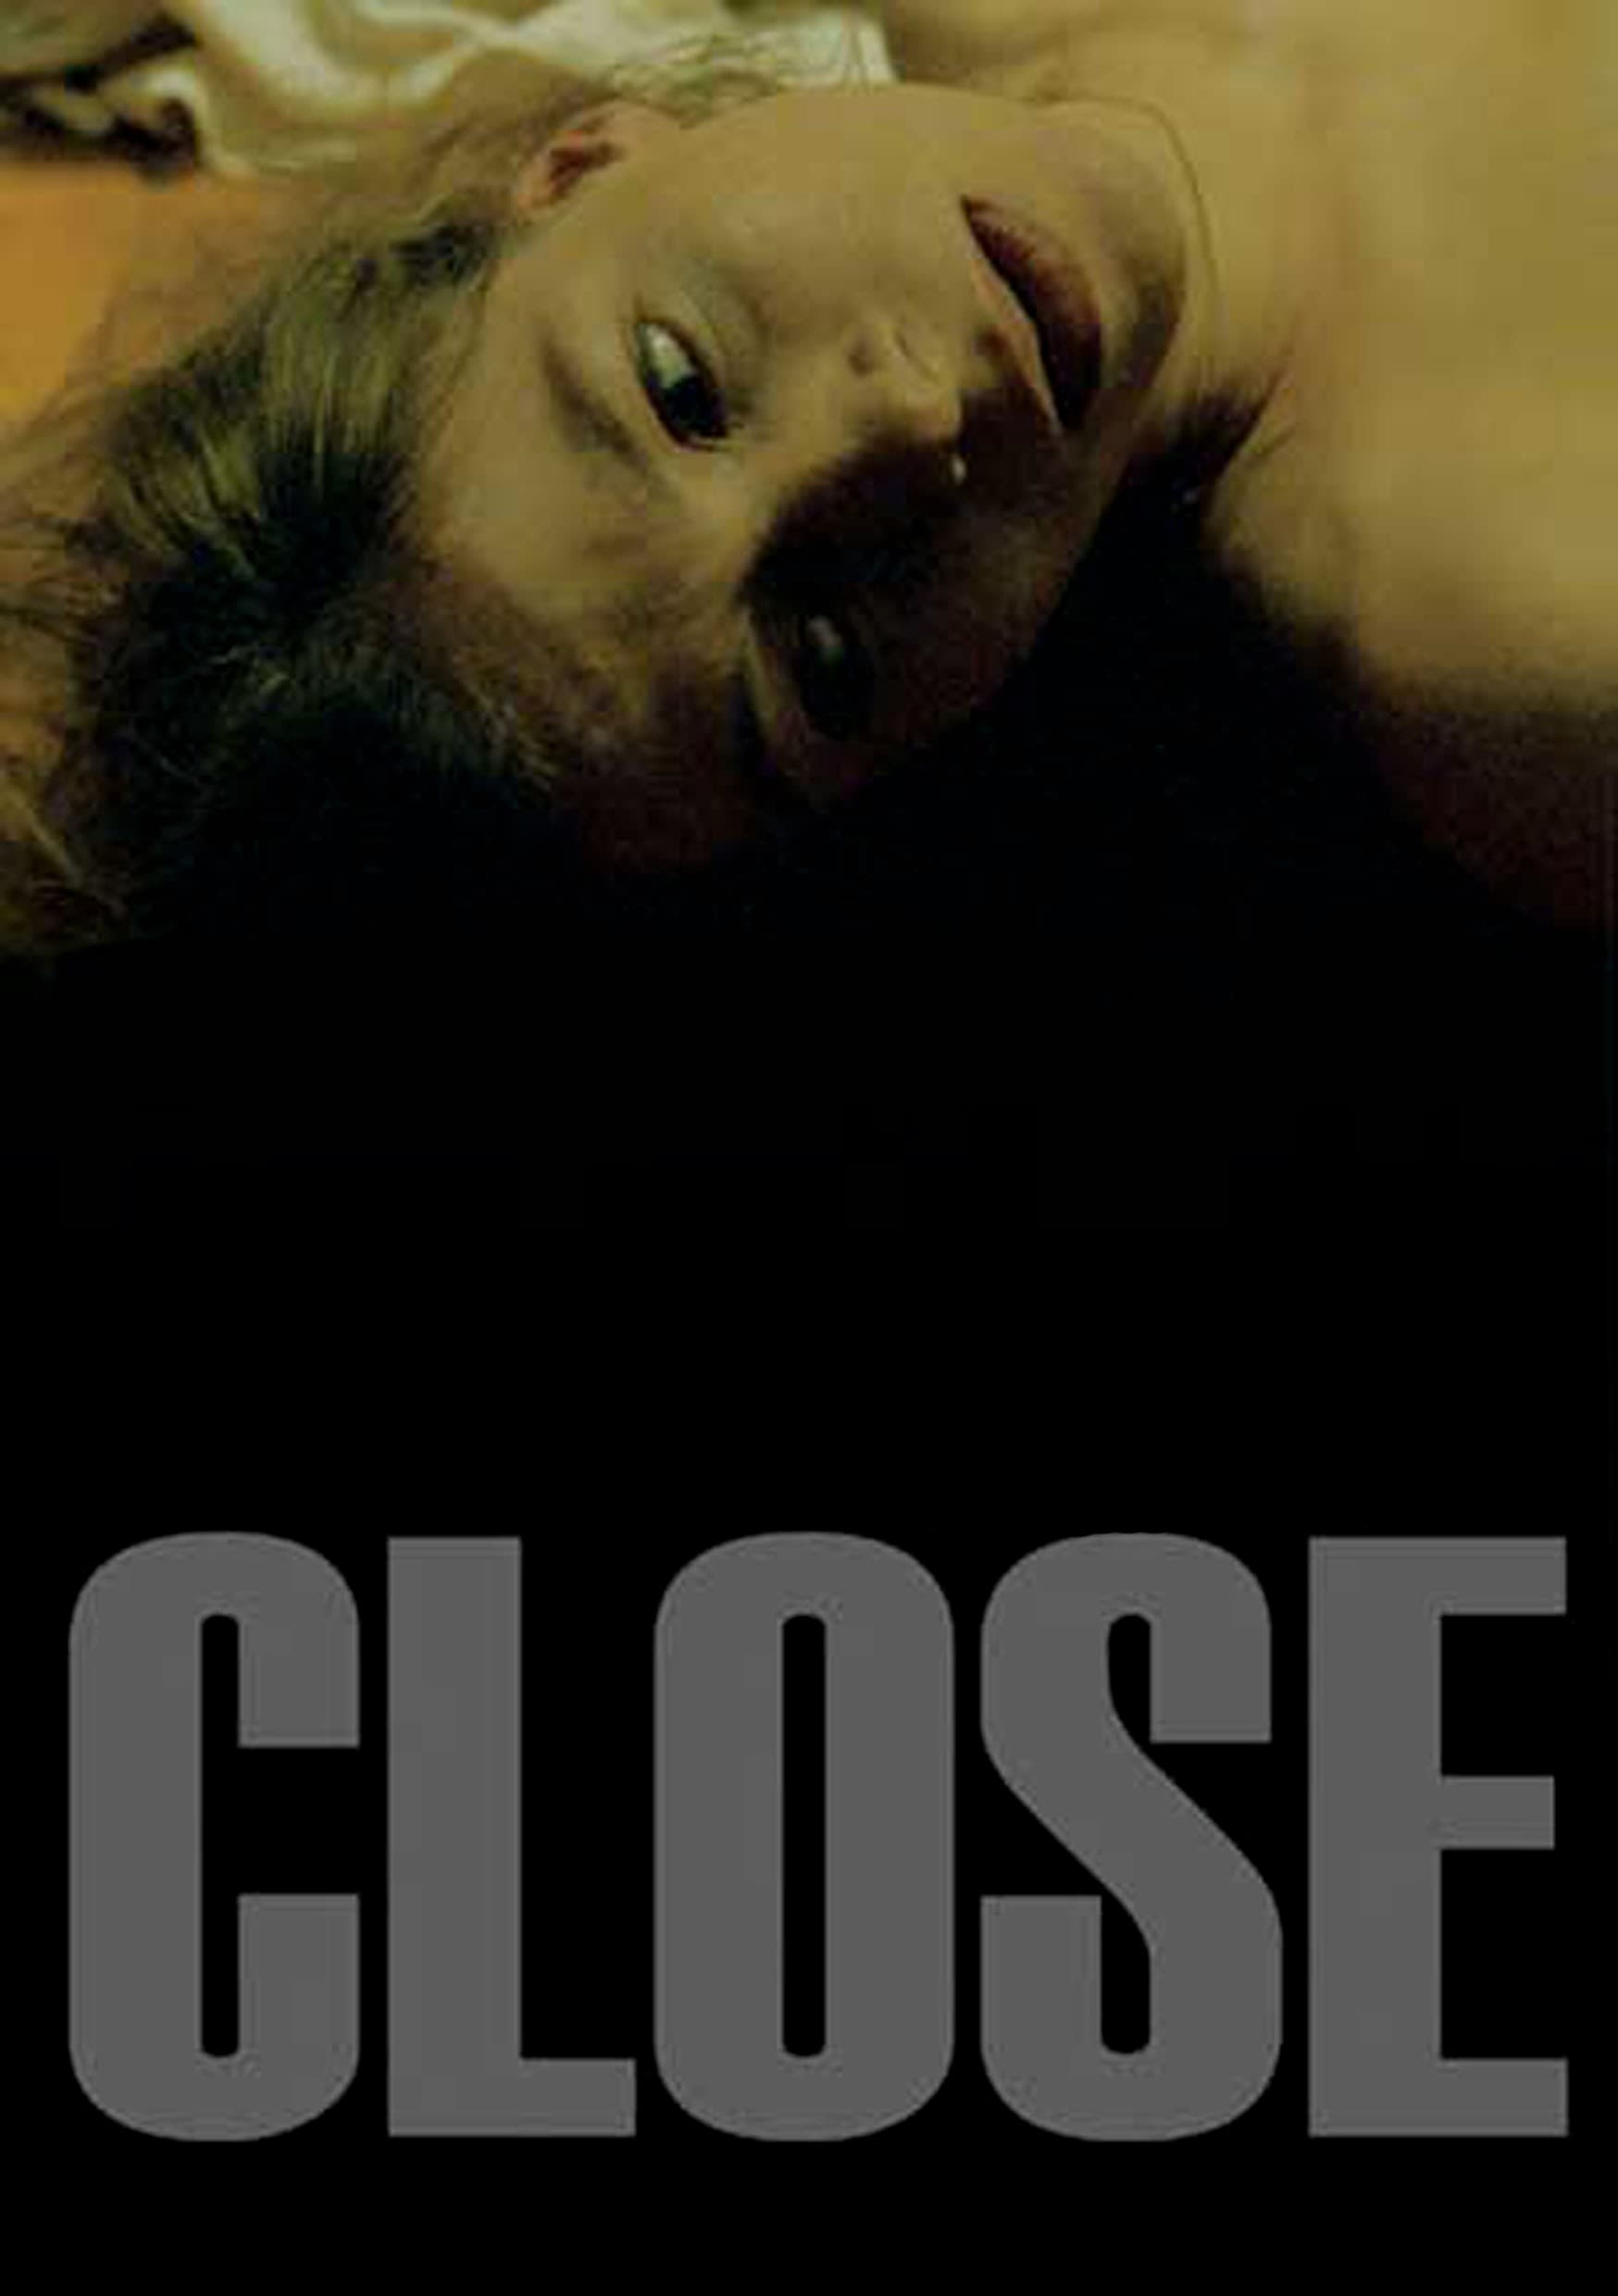 Close (2004)